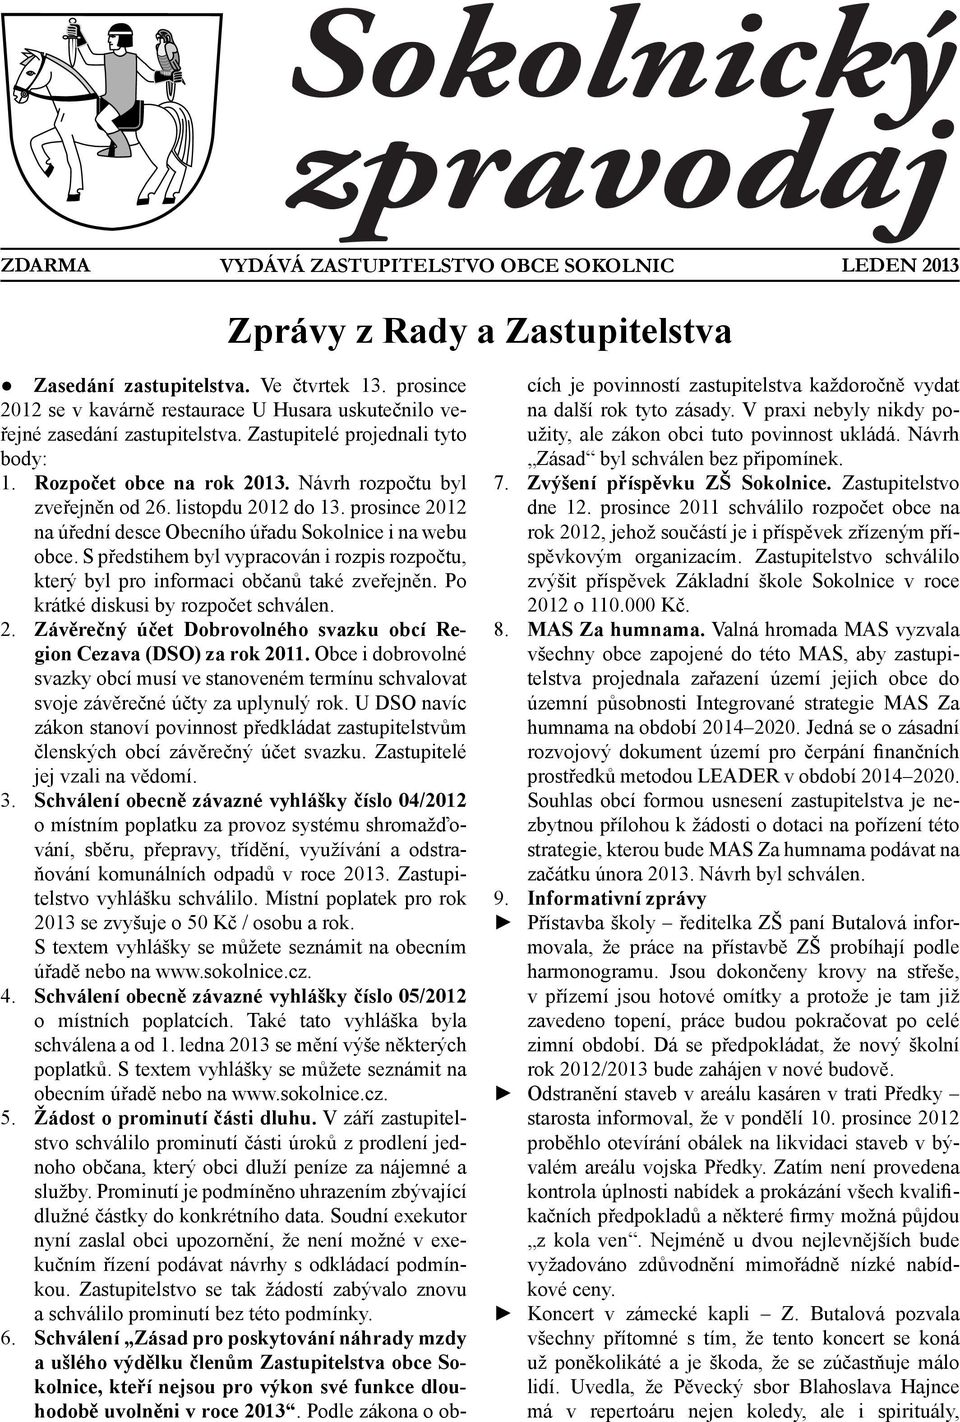 listopdu 2012 do 13. prosince 2012 na úřední desce Obecního úřadu Sokolnice i na webu obce. S předstihem byl vypracován i rozpis rozpočtu, který byl pro informaci občanů také zveřejněn.